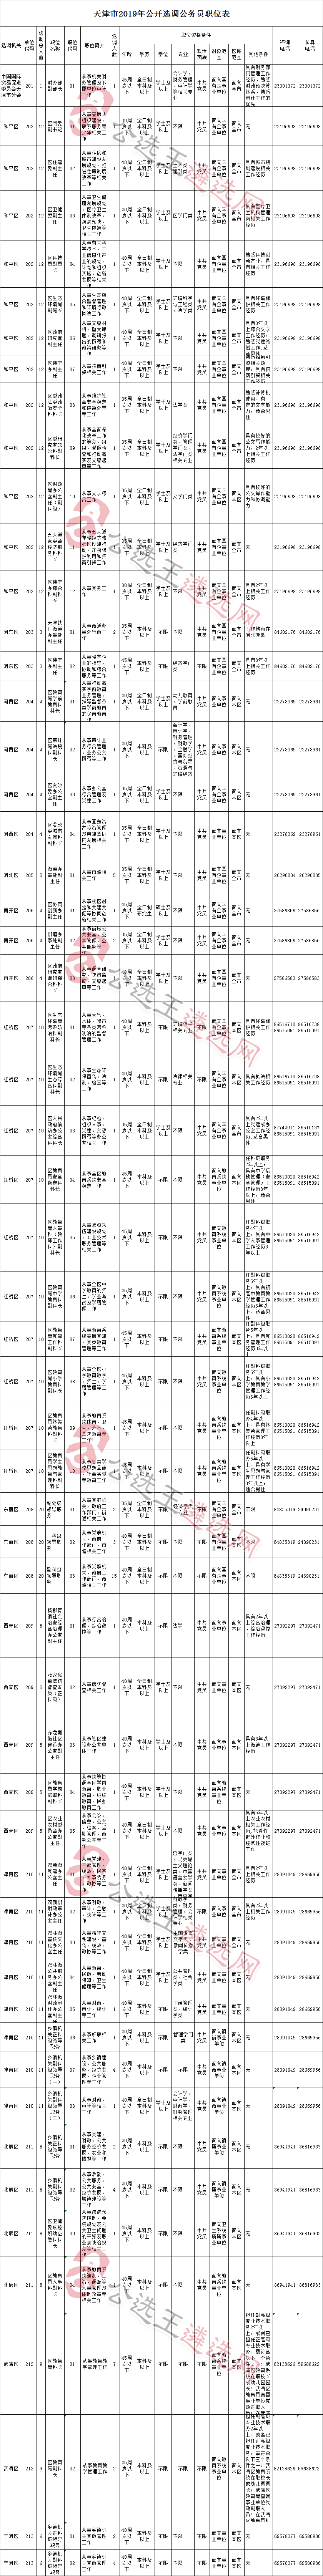 天津市直选调公务员职位表.png